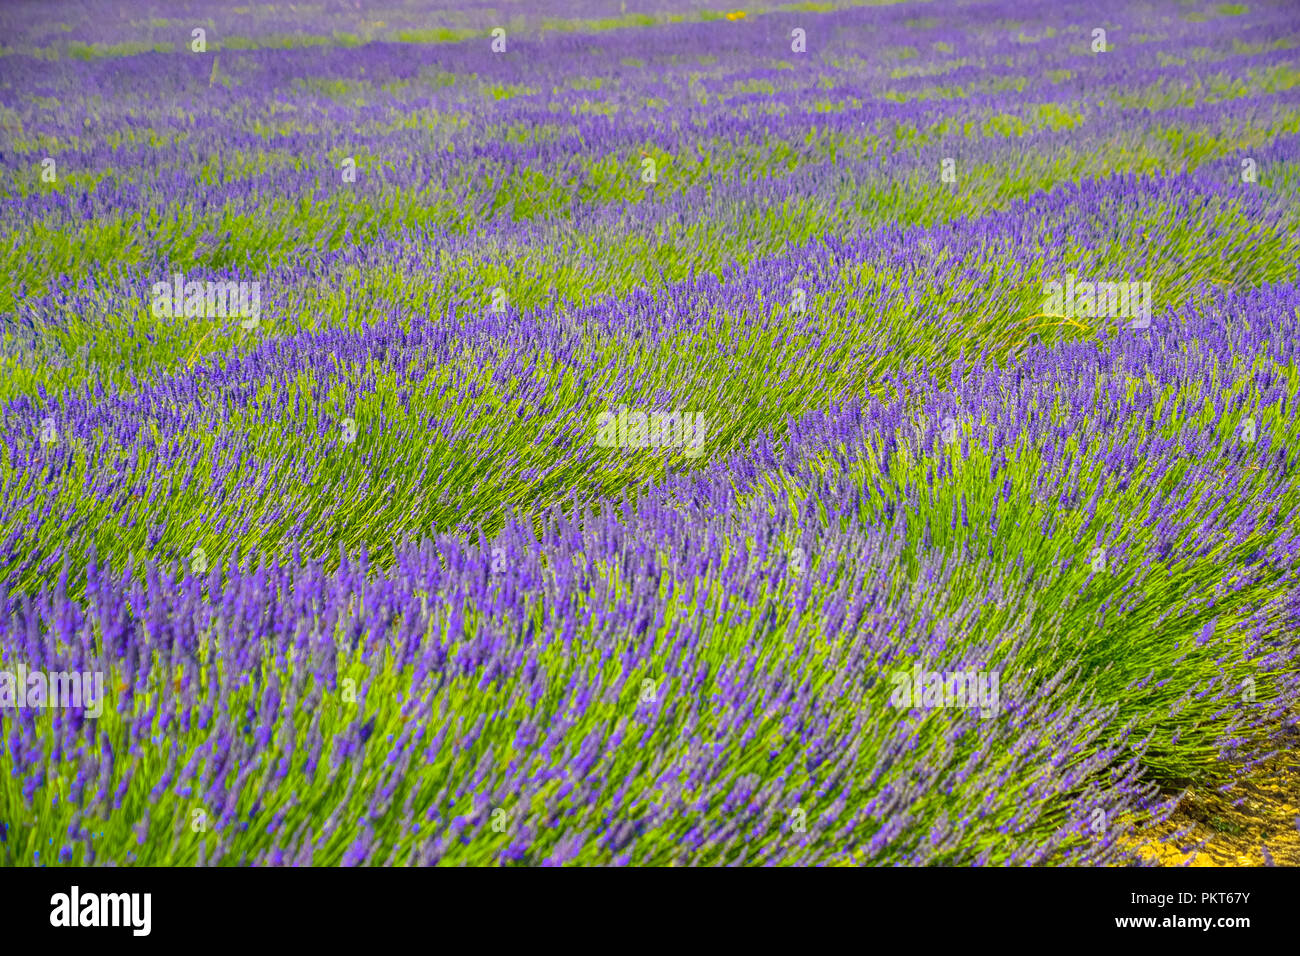 Champs de lavande en fleurs près du village médiéval de Gordes dans le Luberon en Provence, France Banque D'Images